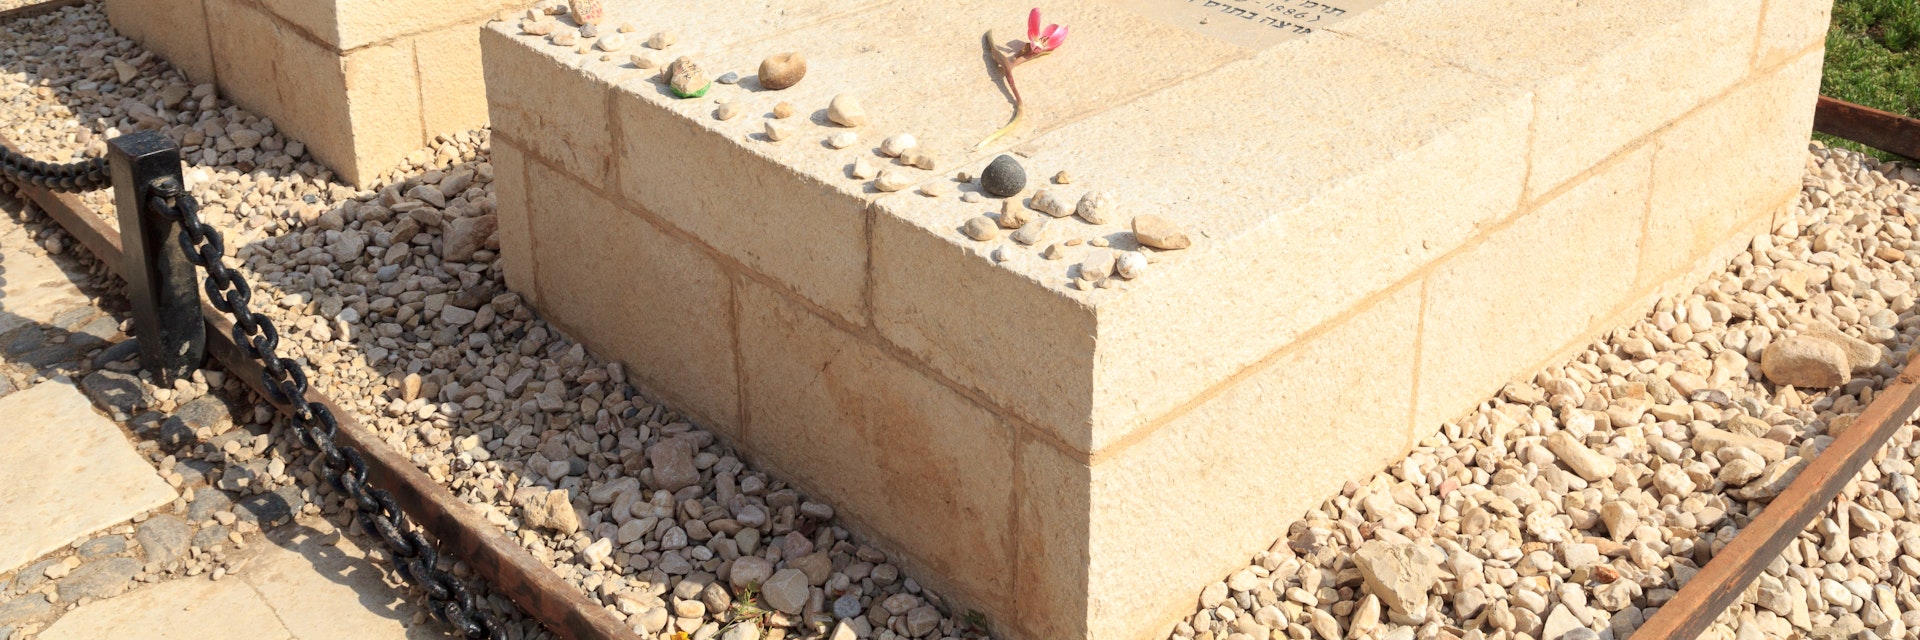 David Ben-Gurion and Paula Ben-Gurion's tombs in Kibbutz Sde Boker. 